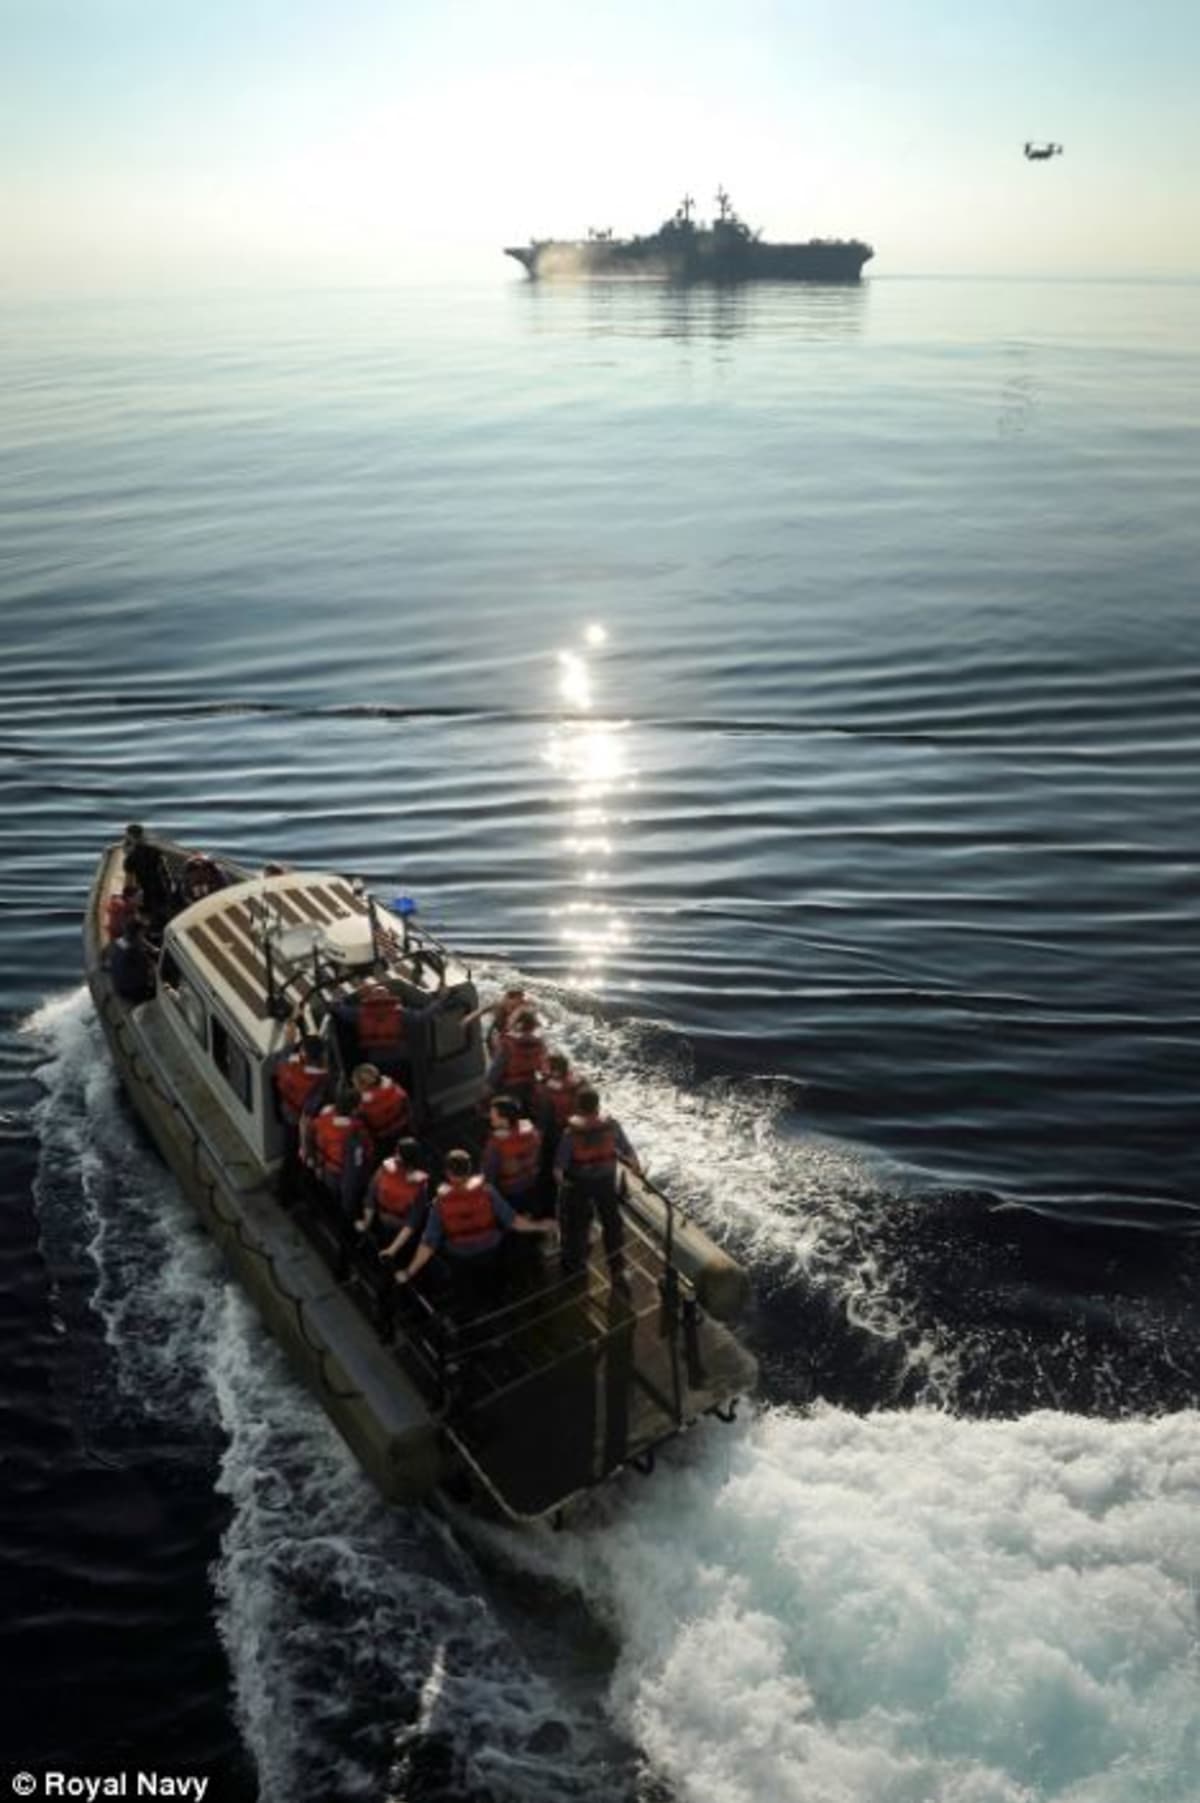 Nicky Wilson nafotil sérii fotografií ze života Royal Navy